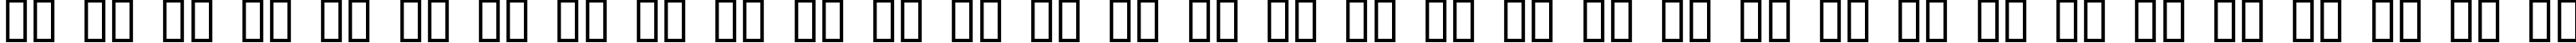 Пример написания русского алфавита шрифтом Lumpy Bump